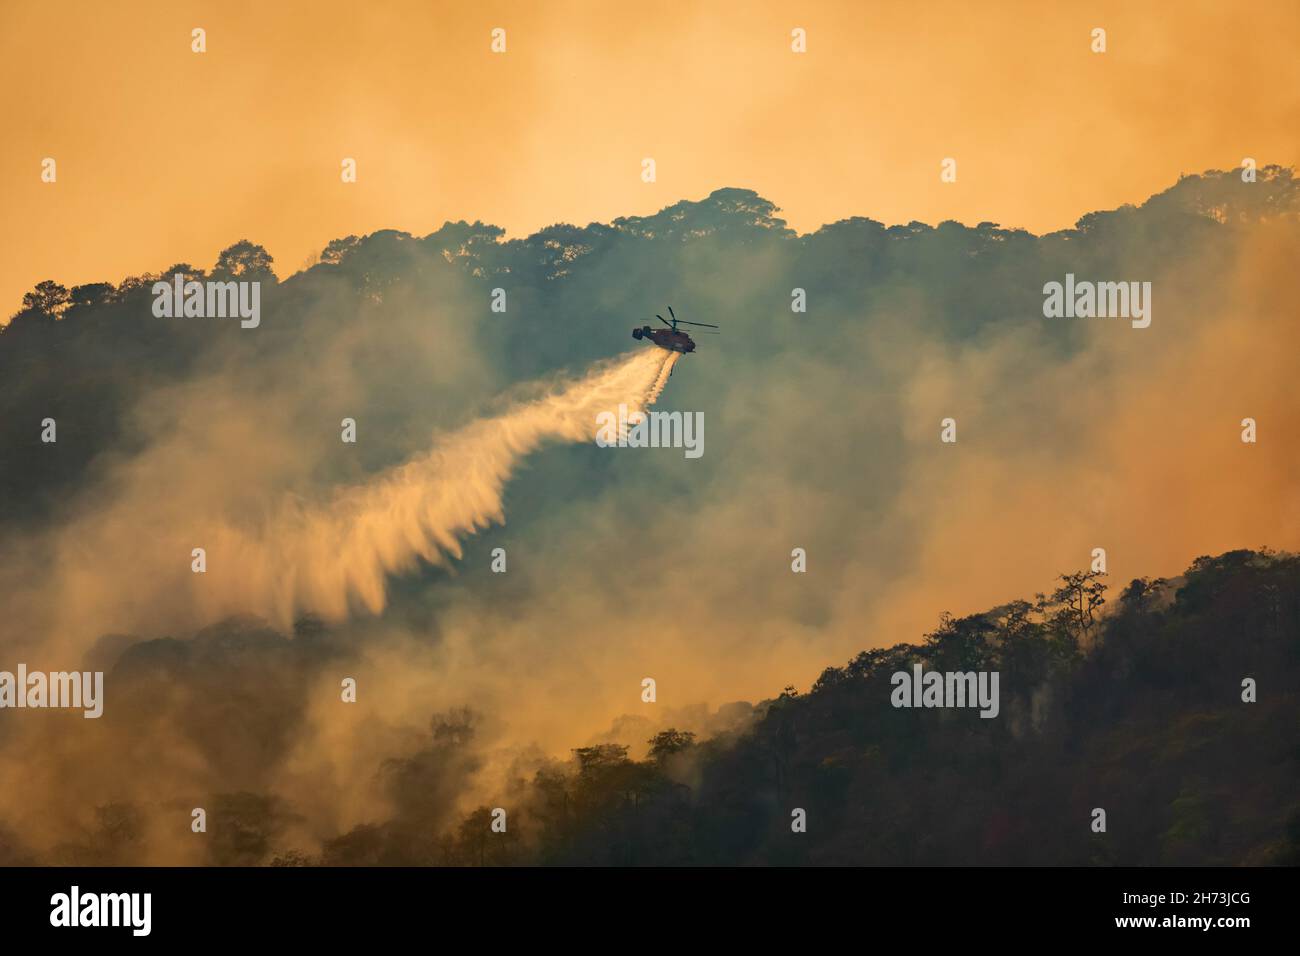 Un hélicoptère de lutte contre le feu qui larde de l'eau sur un feu de forêt Banque D'Images